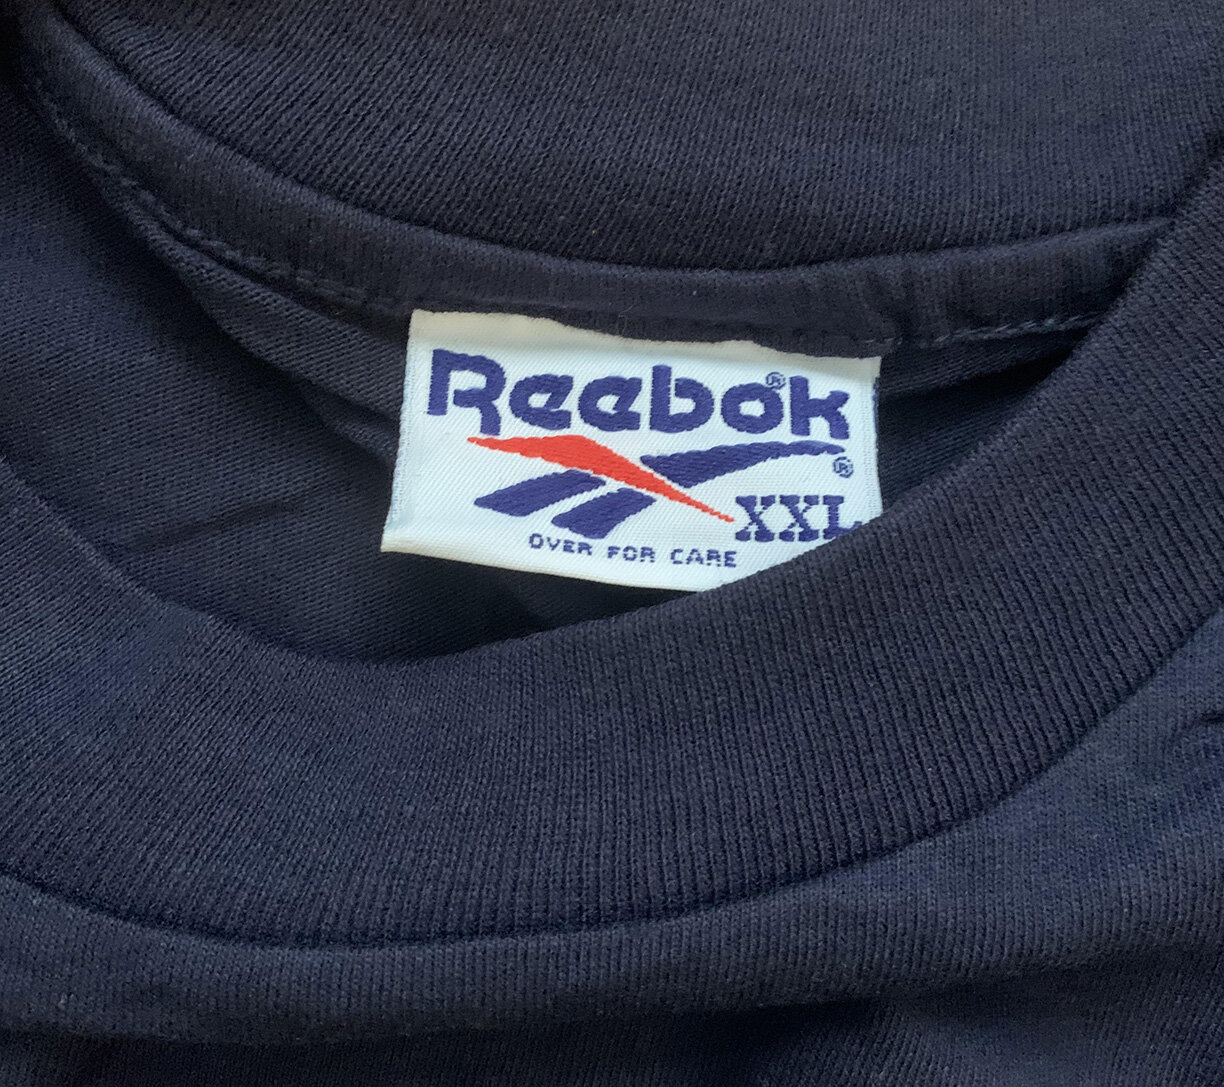 reebok xxl size